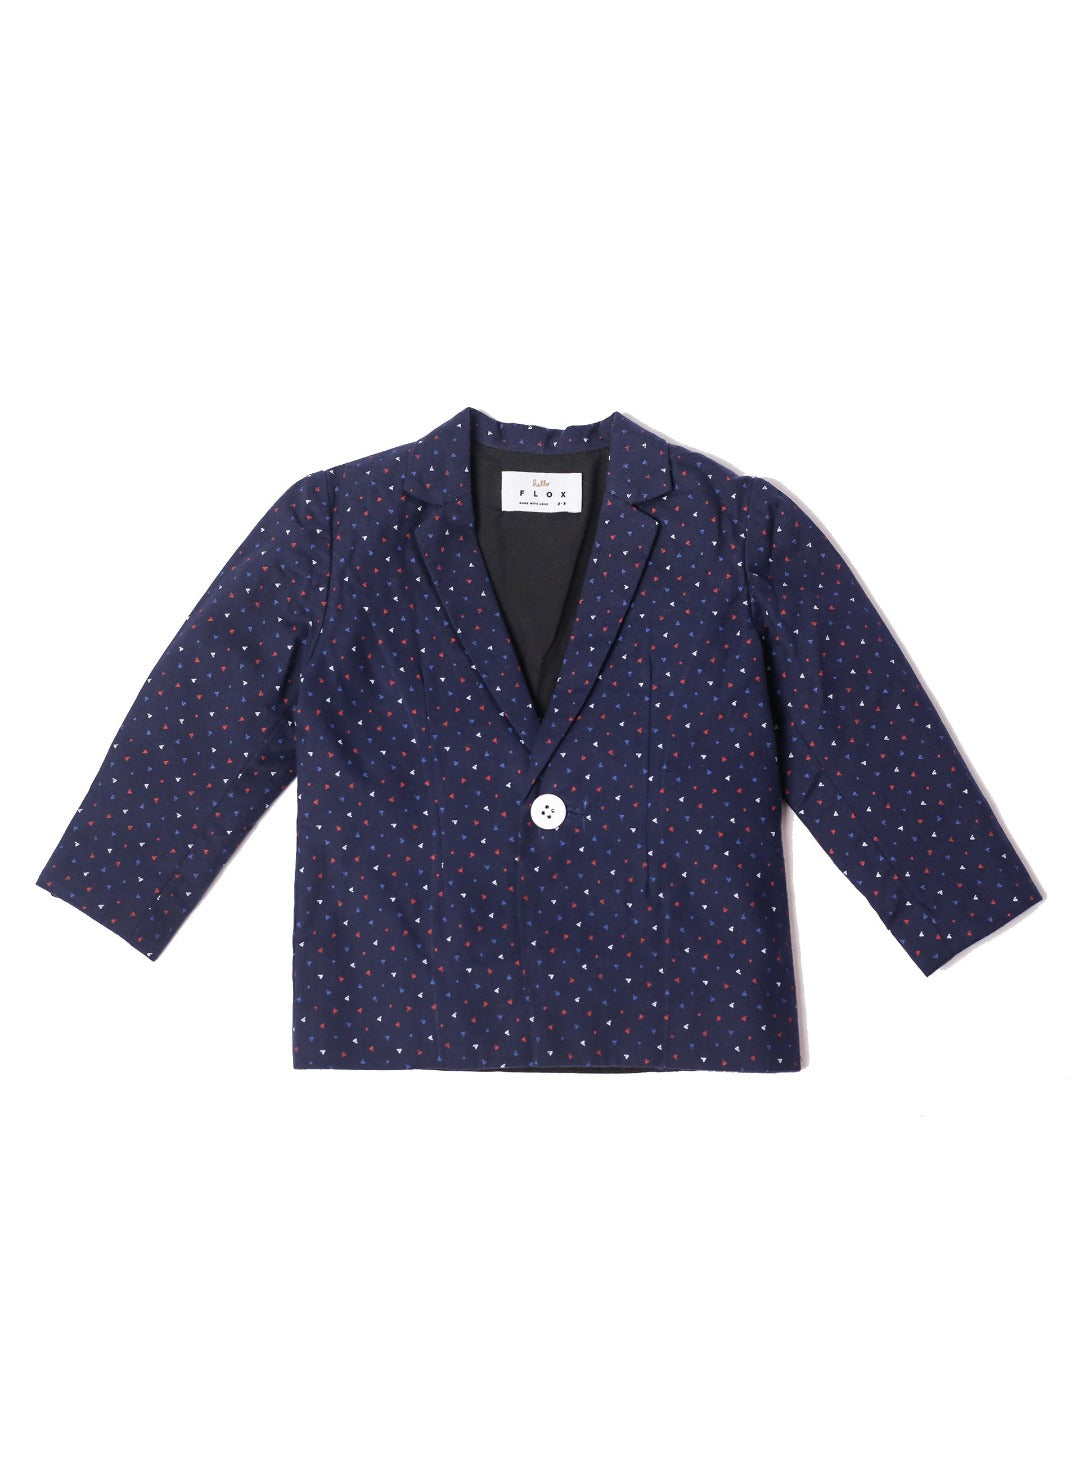 navy blue blazer with mini triangle pattern